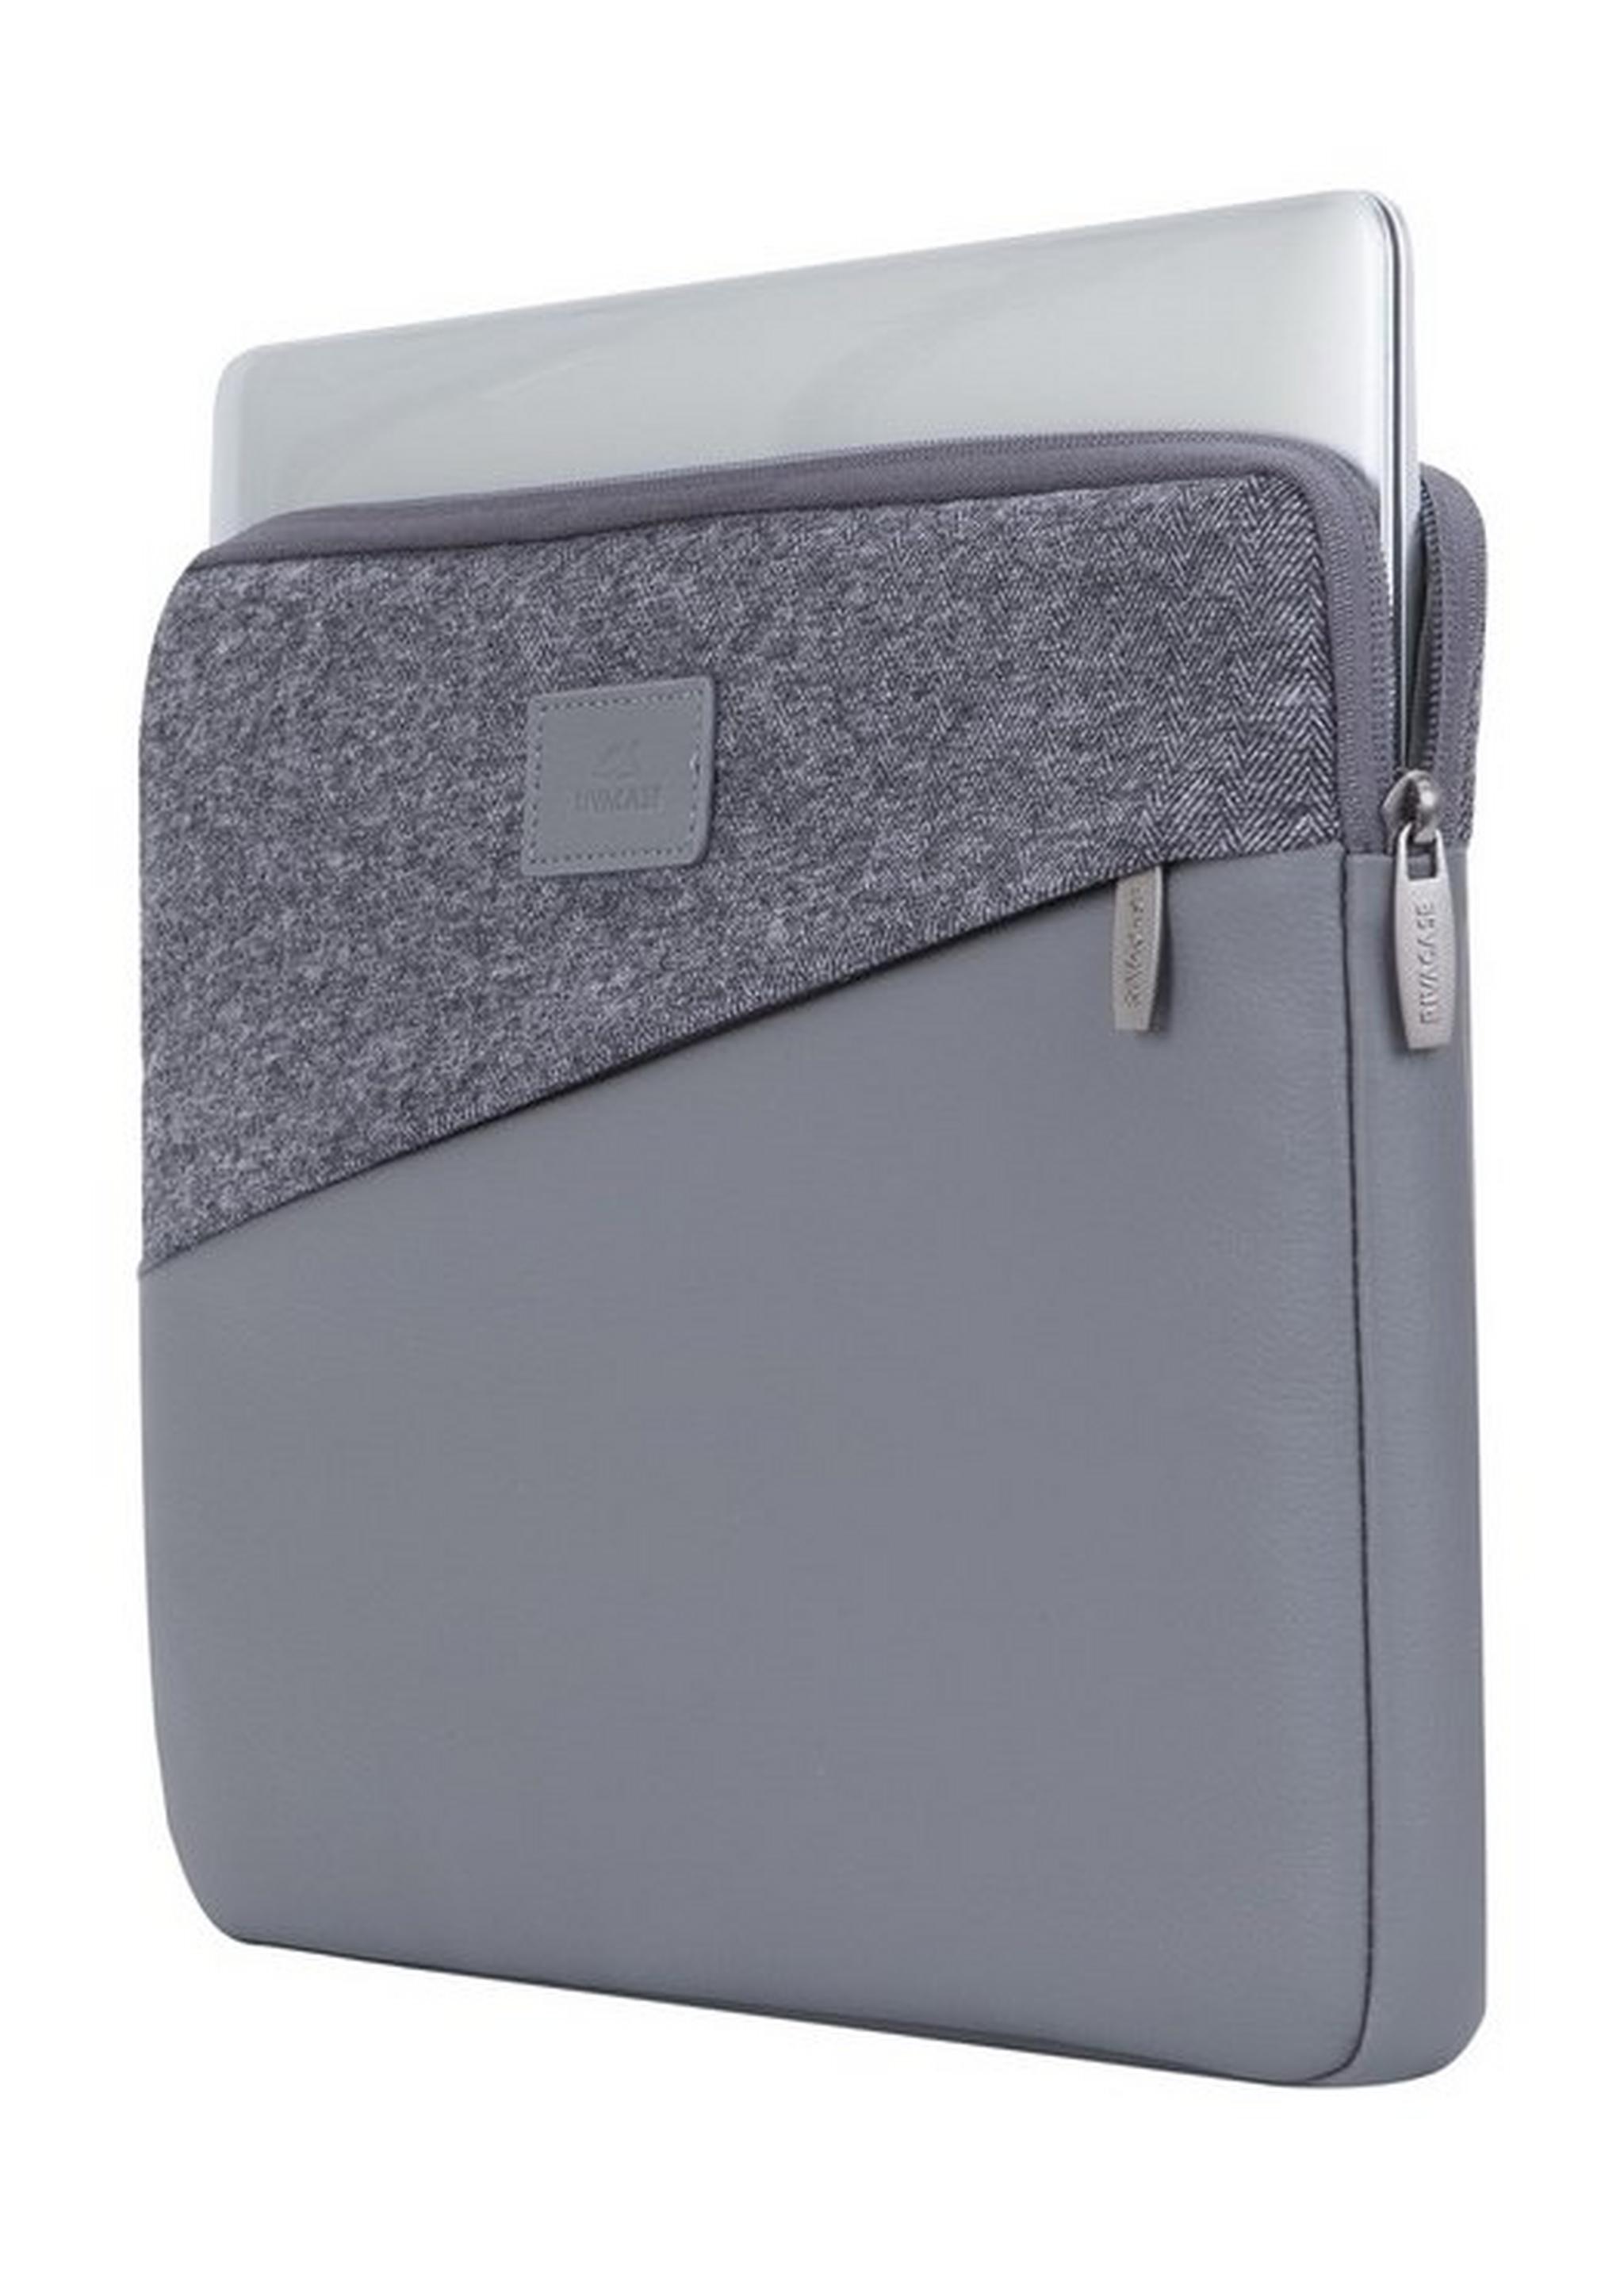 Rivacase 13.3 Sleeve for Ipad & Macbook (7903) - Grey